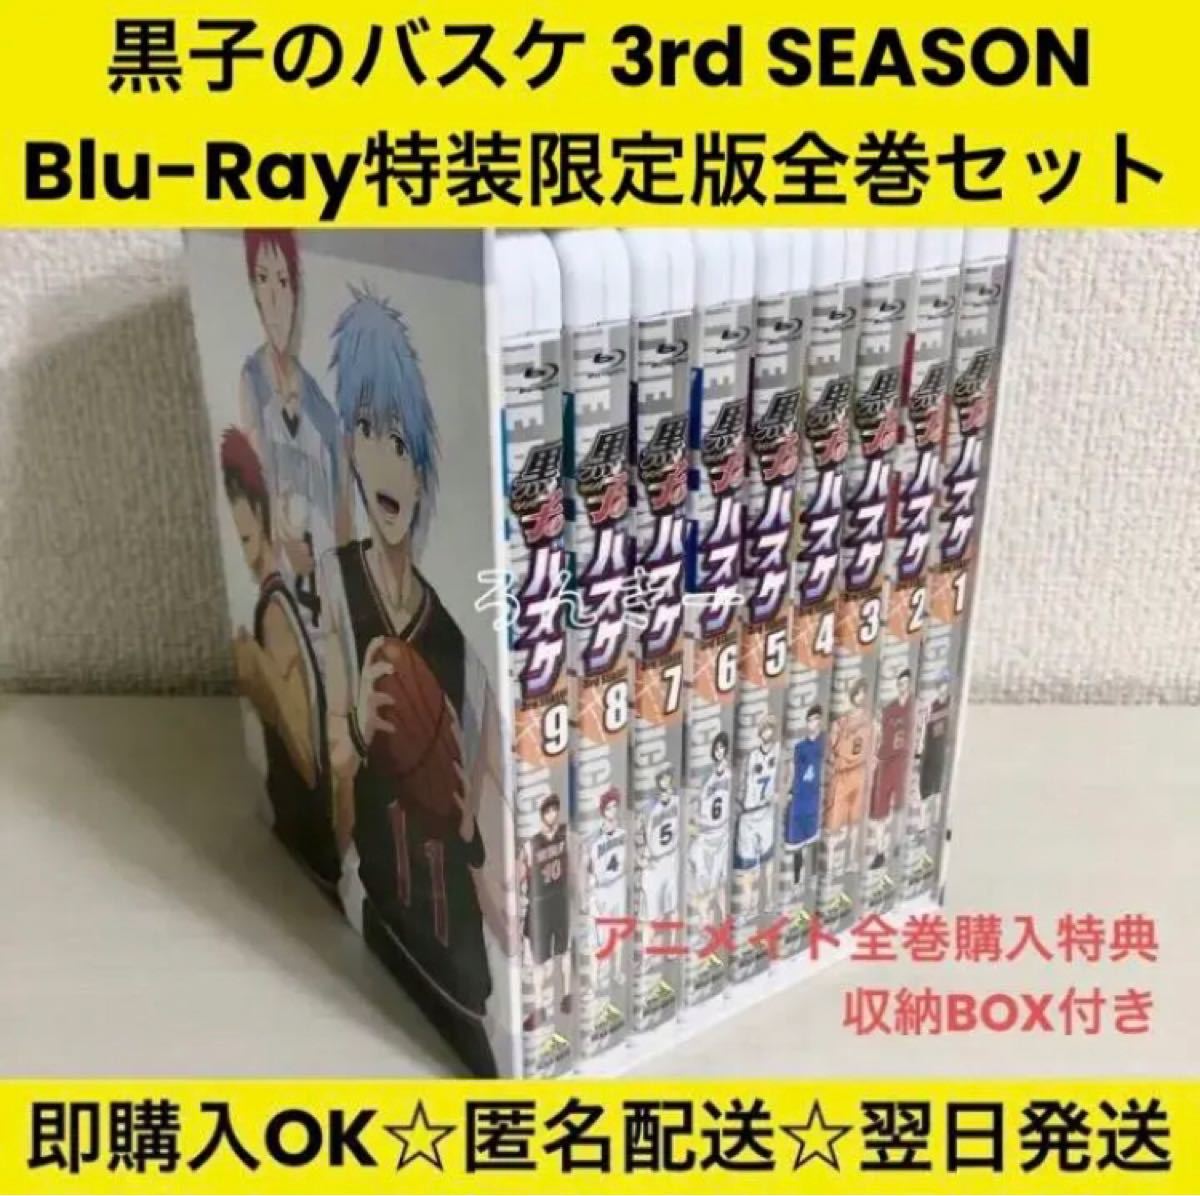 【メール便無料】DVD/ブルーレイ黒子のバスケ 3rd SEASON Blu-Ray 特装限定版 全巻セット